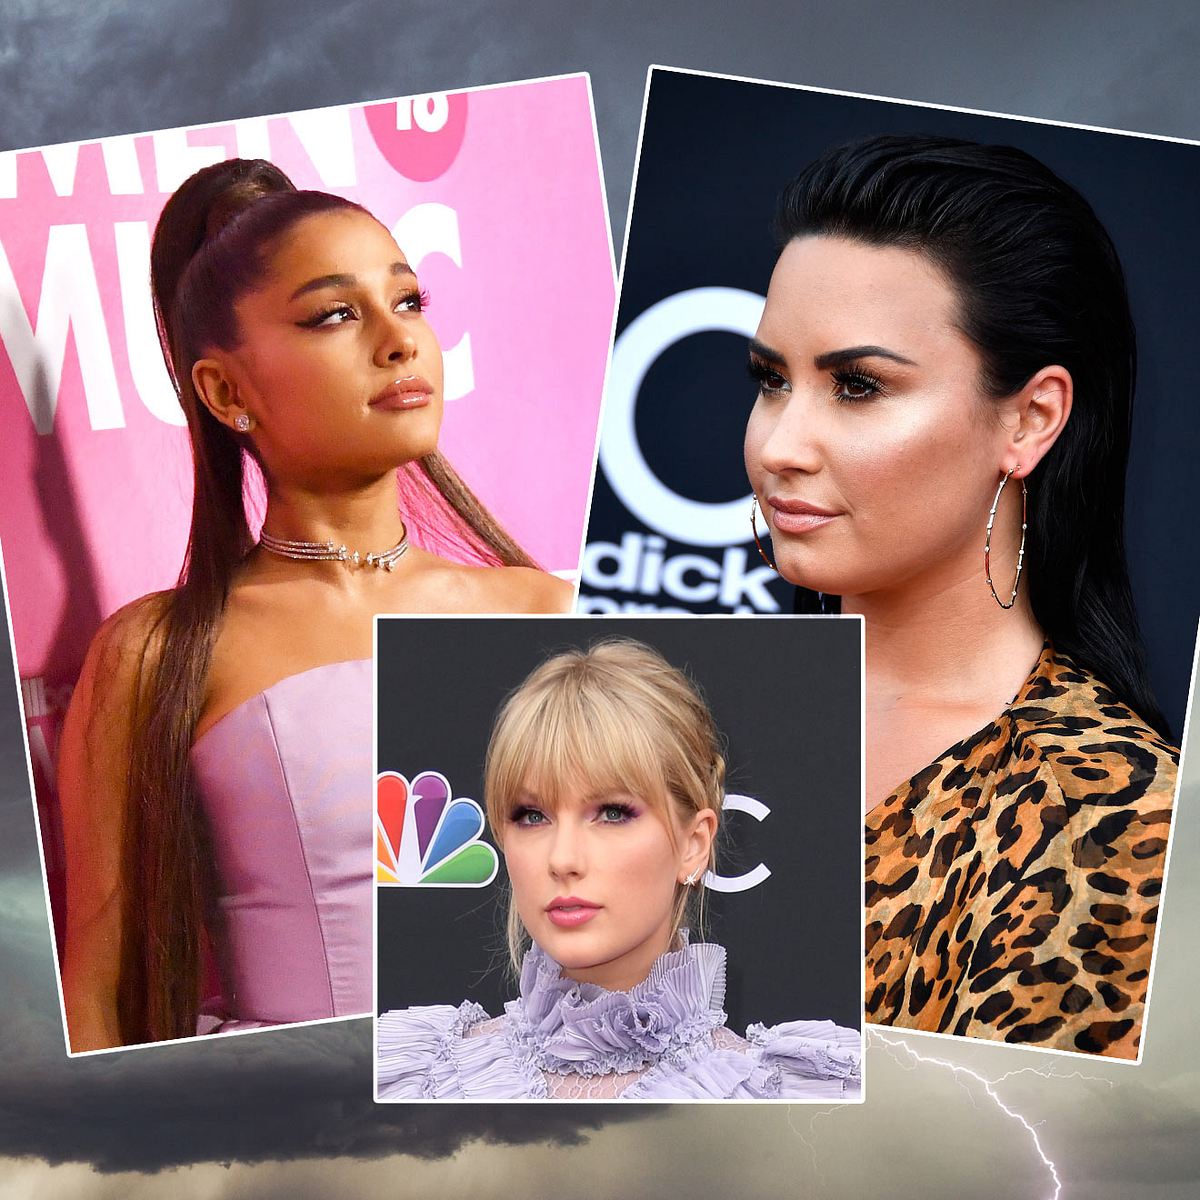 Taylor Swift Skandal: Jetzt mischen sich Ariana Grande und Demi Lovato ein!